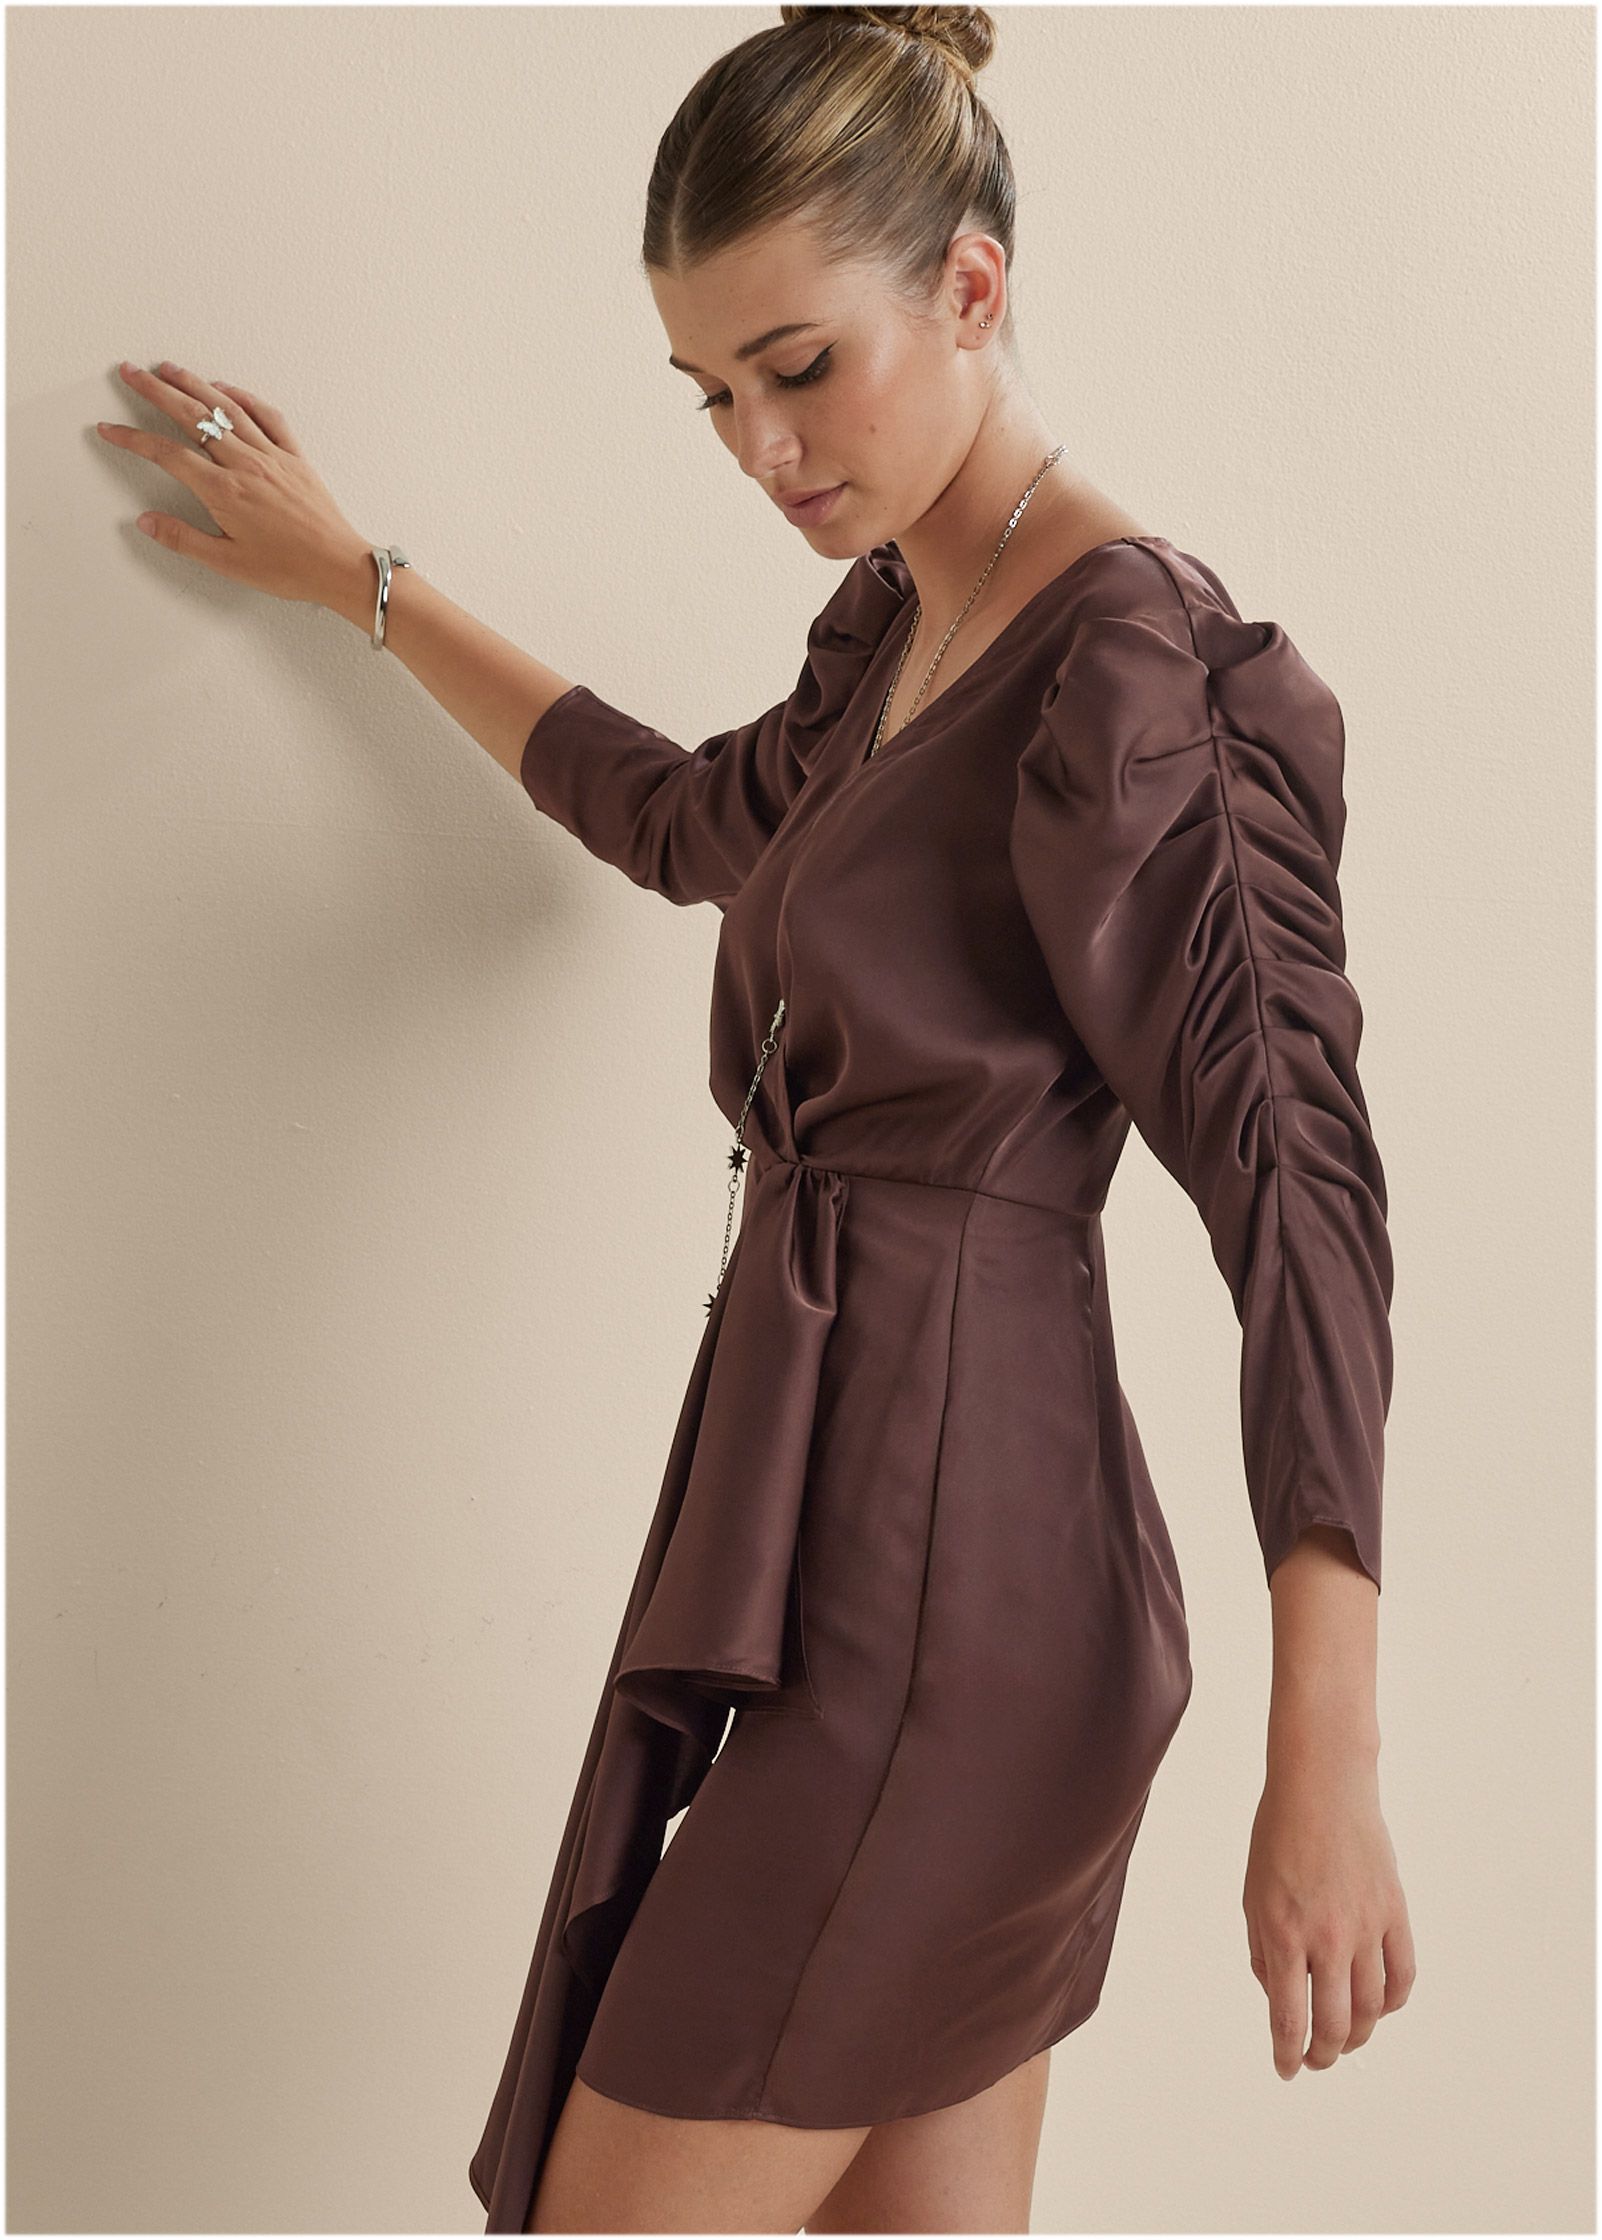 Delilah Belle X Venus Puff Sleeve Dress in Dark Brown | VENUS